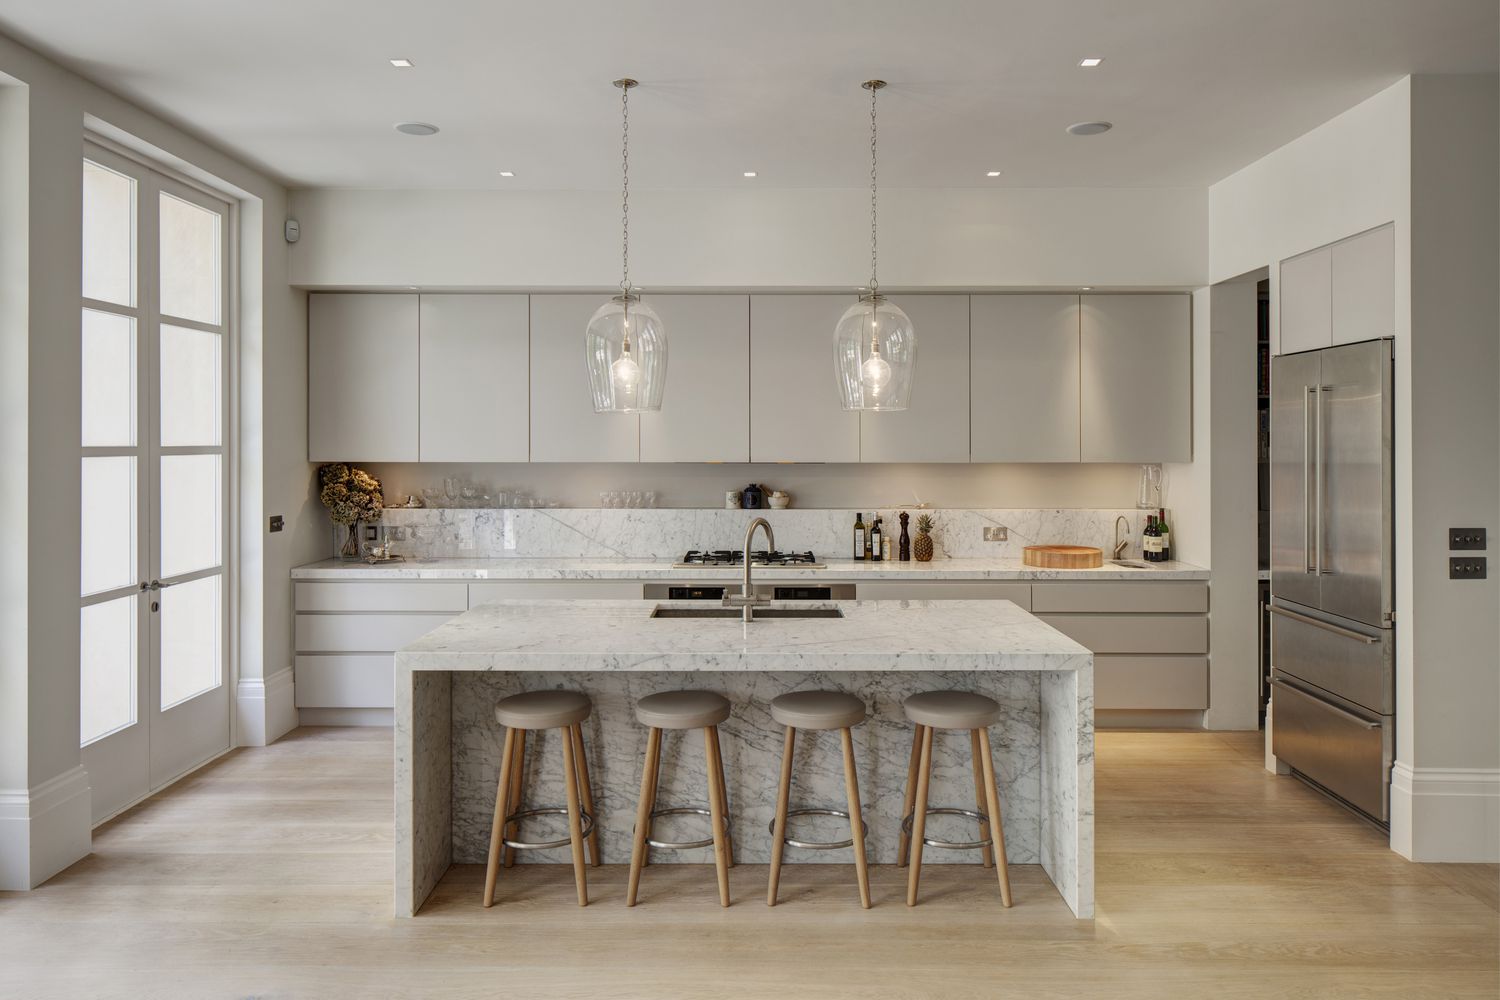 Cozinha com ilha de mármore em uma casa de família moderna de 2012, projeto de De Rosee Sa